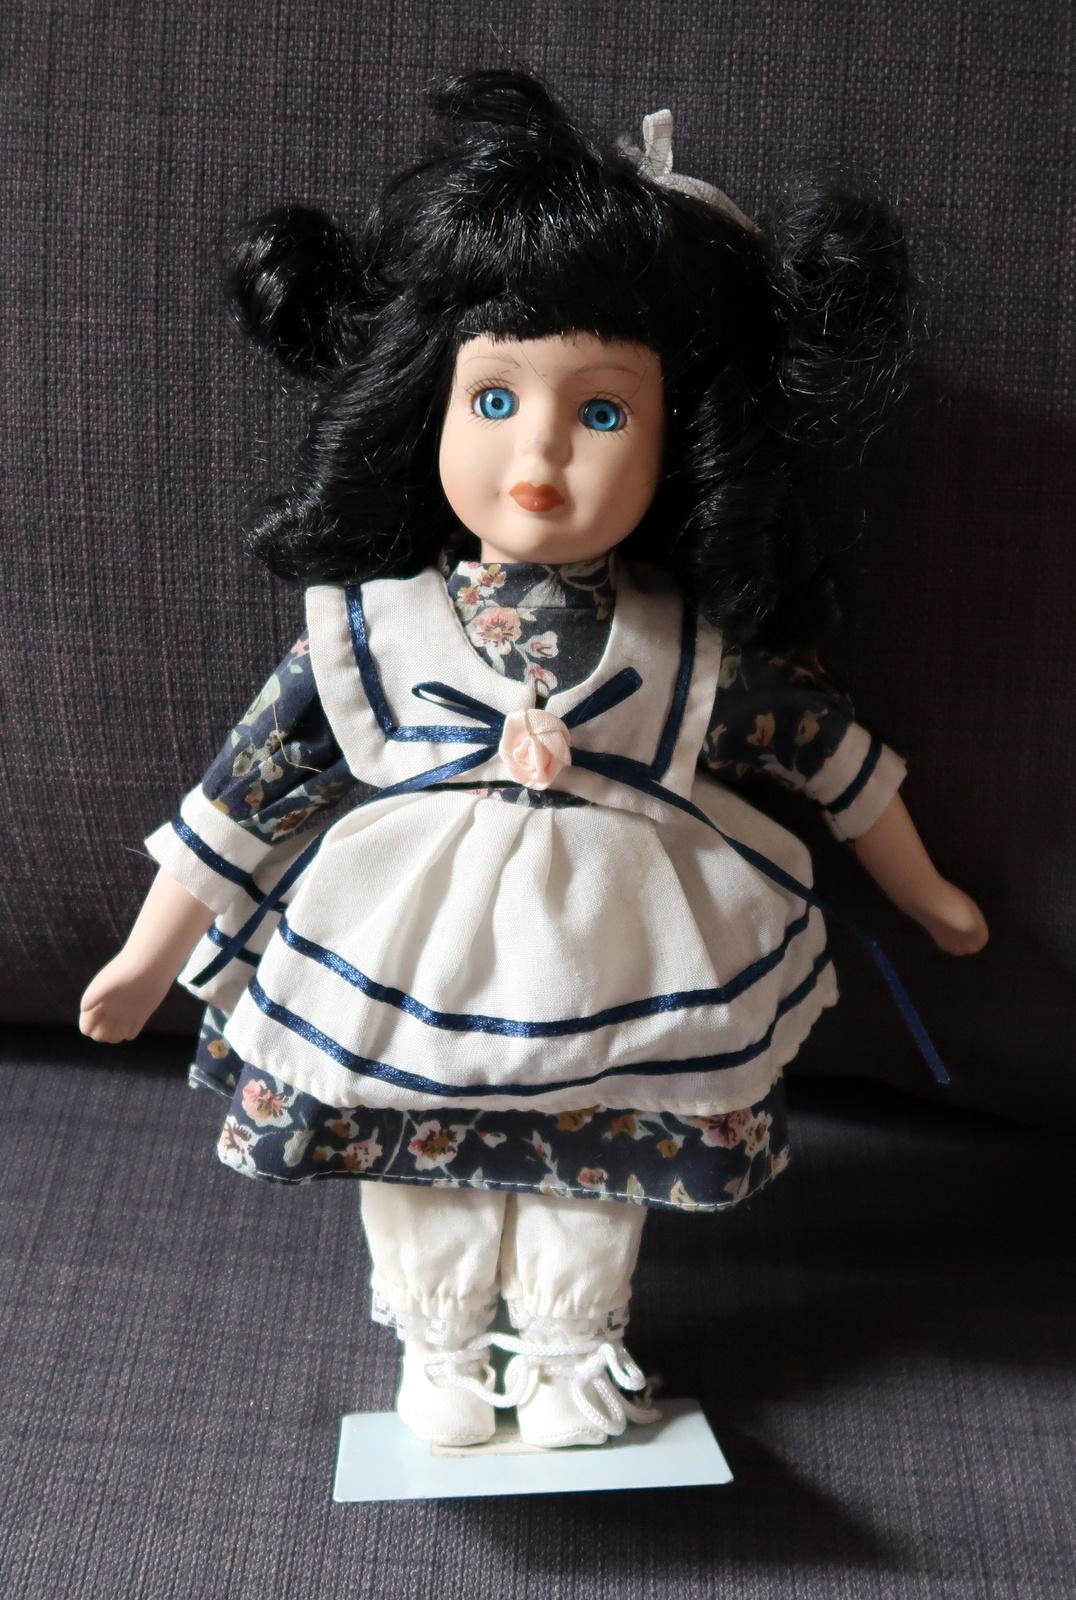 Plongez dans le charme d'une époque révolue avec cette poupée Vintage en porcelaine, une beauté délicate datant du milieu du XXe siècle. Parée d'une robe blanche et bleue, avec des cheveux noirs saisissants et des yeux bleus captivants, cette poupée